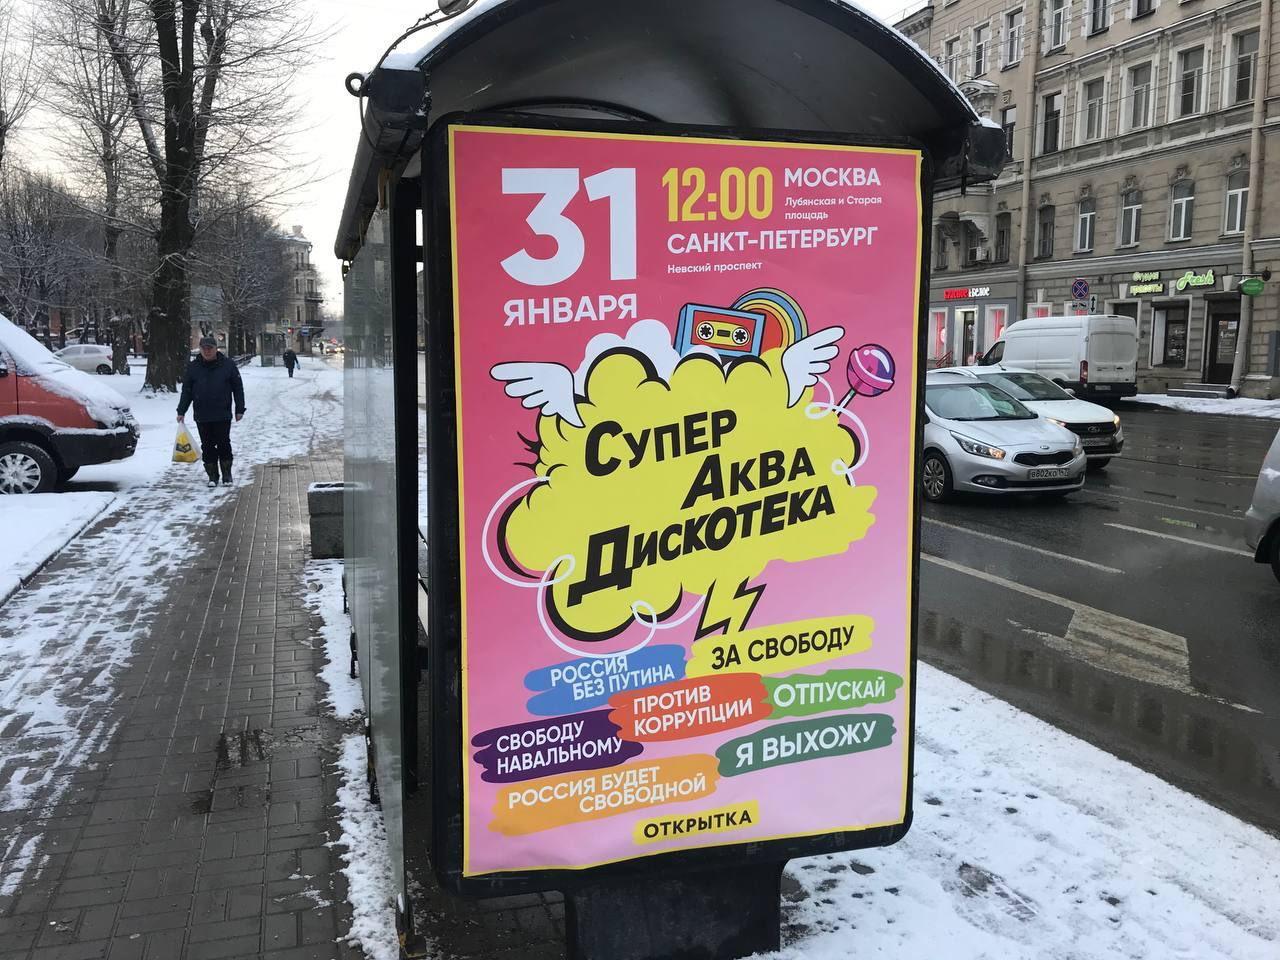 приколисты повесили постер)))